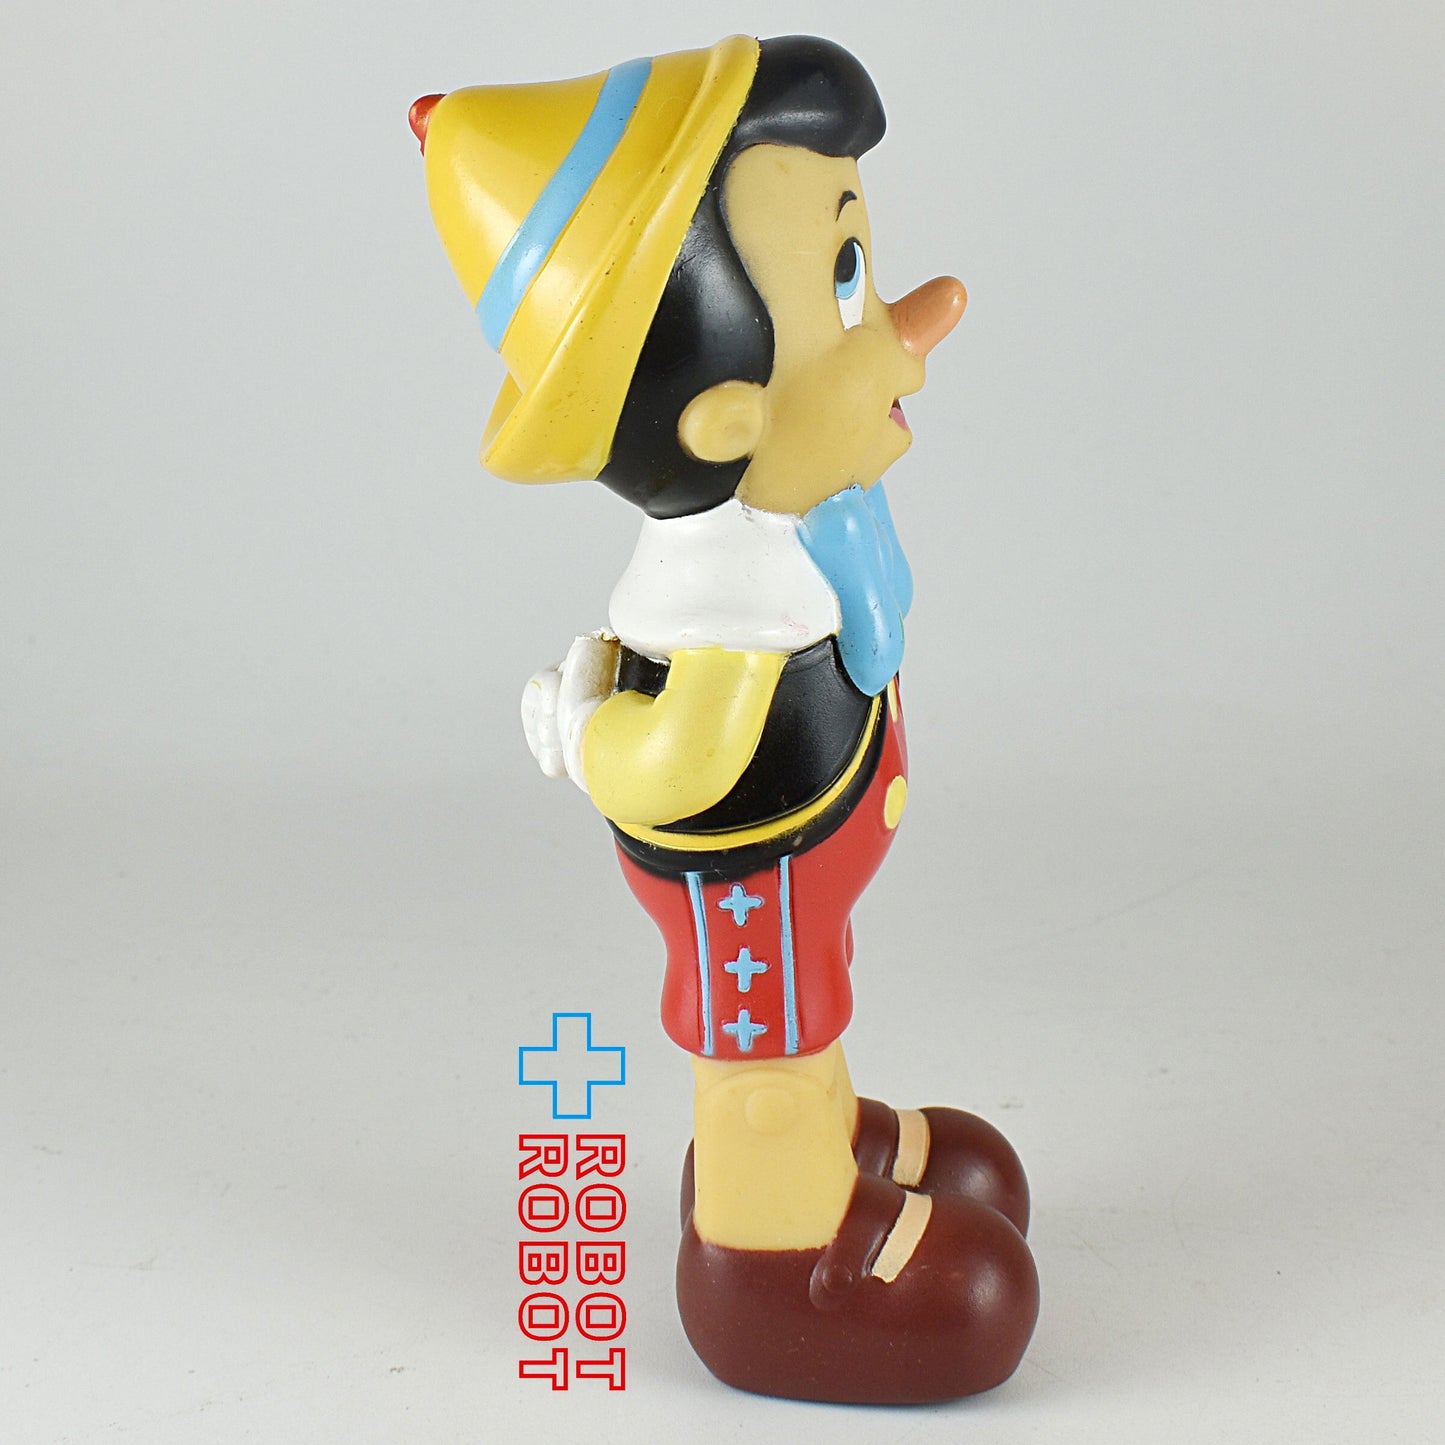 ディズニー ピノキオ ラバーフィギュア 13.5センチ